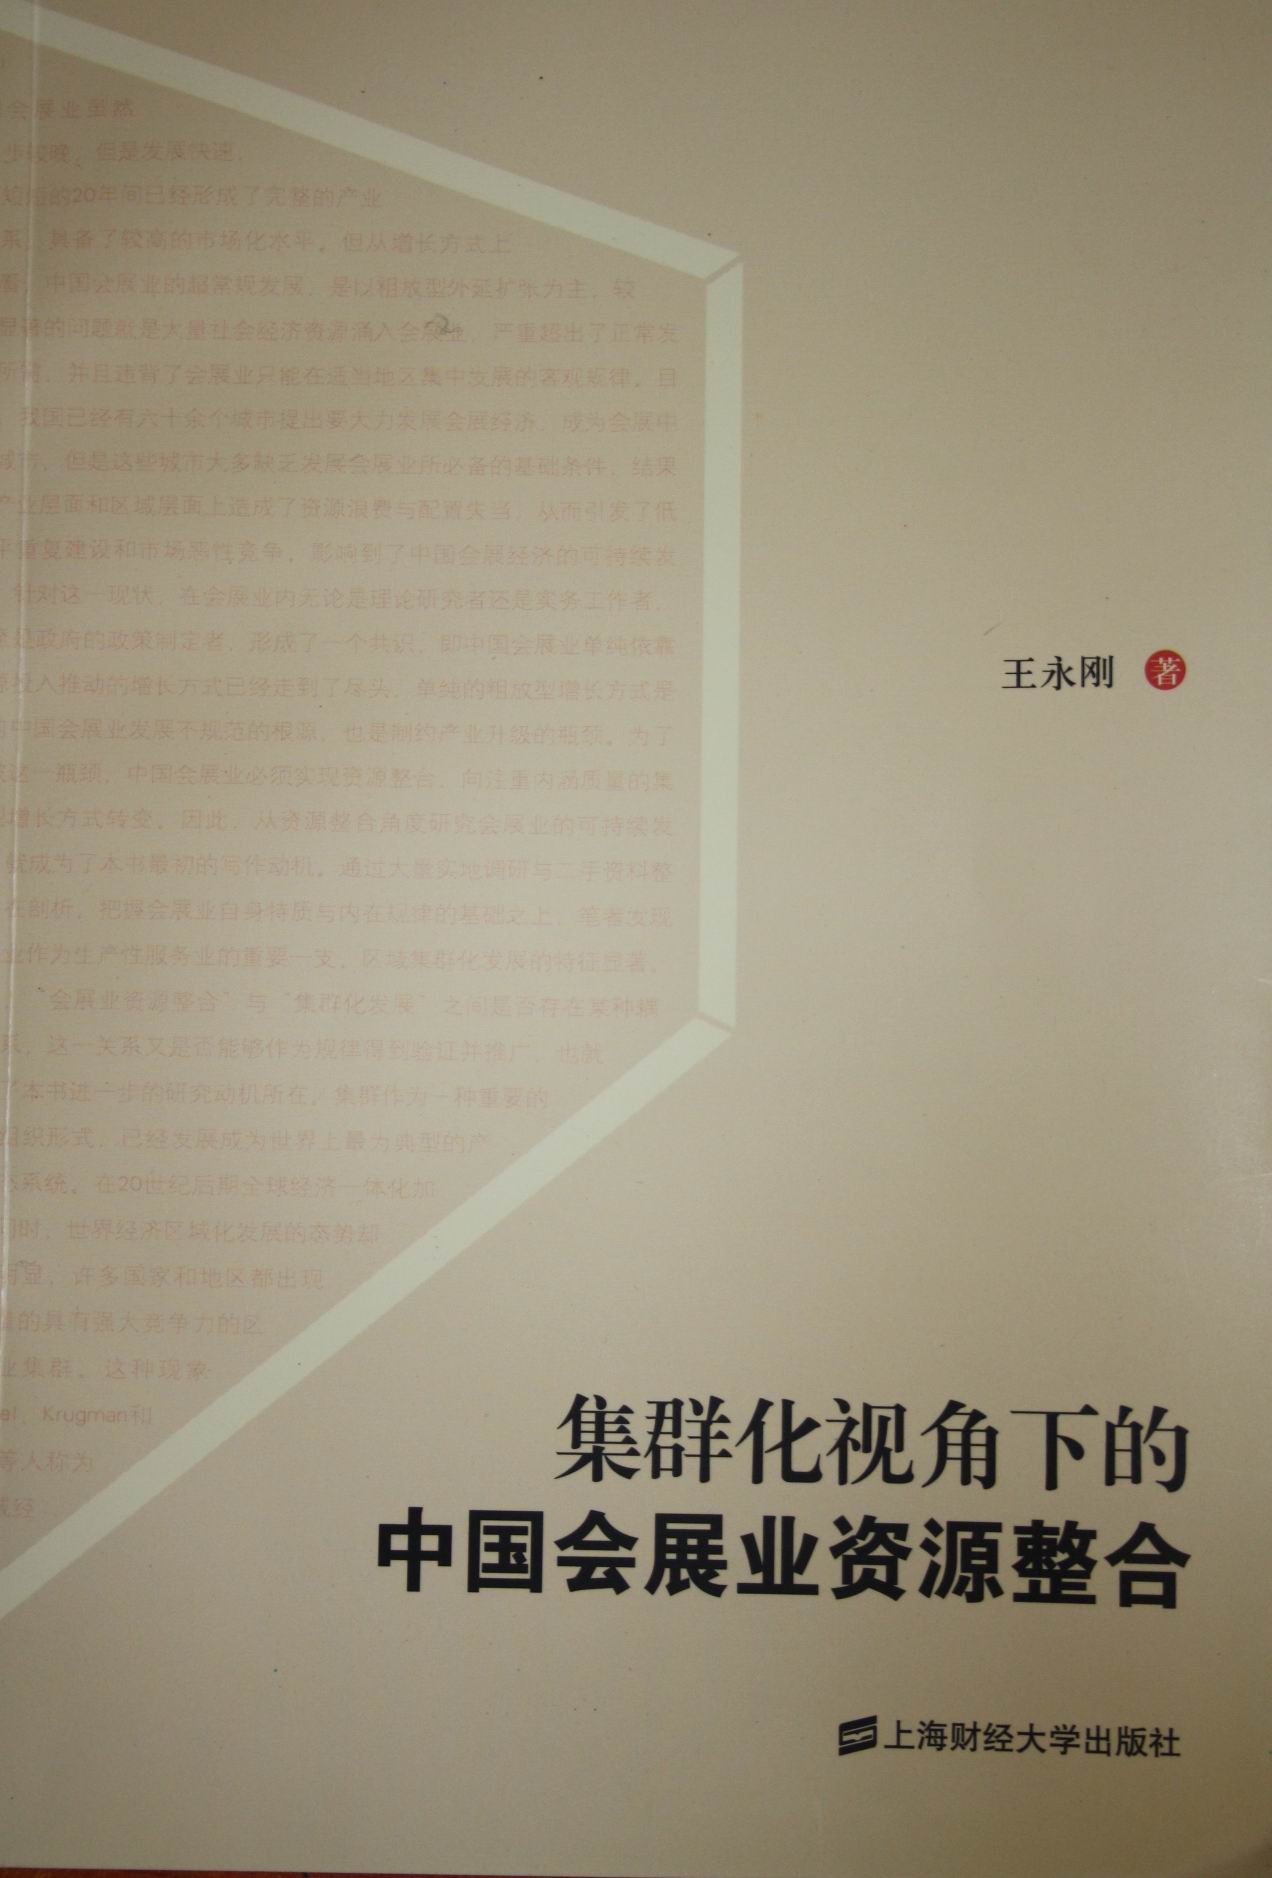 《集群化视角下的中国会展业资源整合》